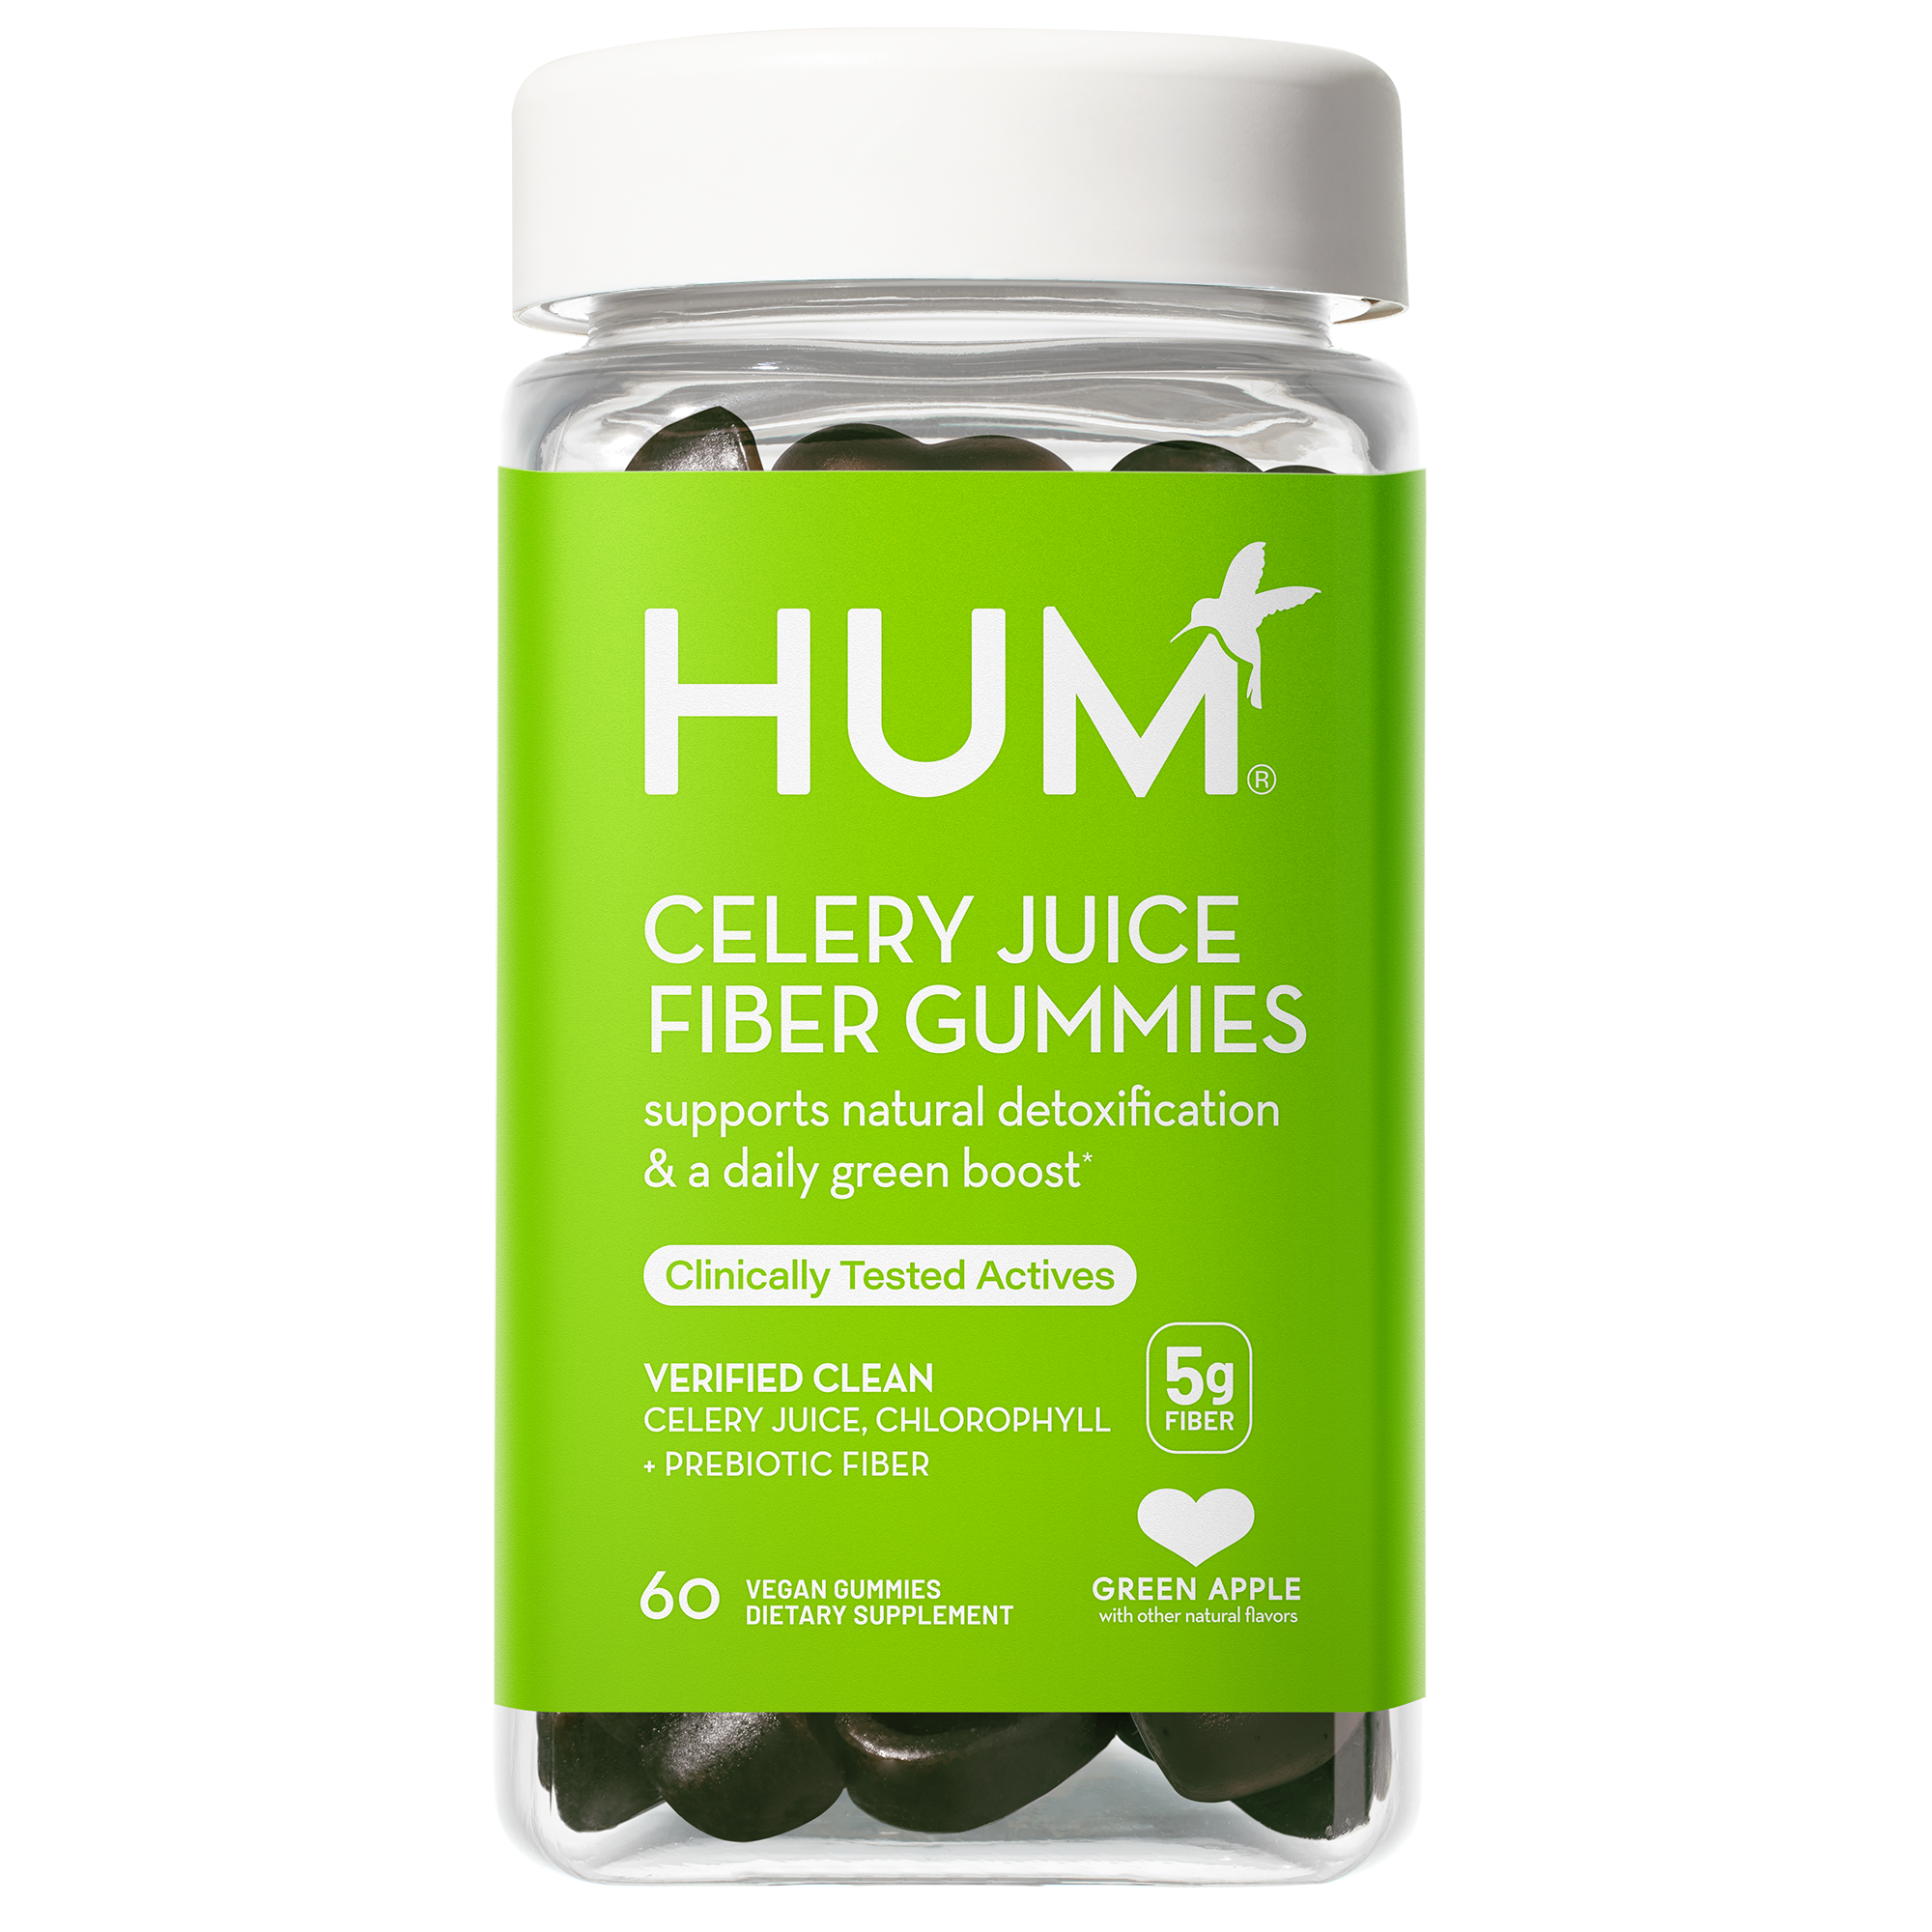 Celery Juice Fiber Gummies